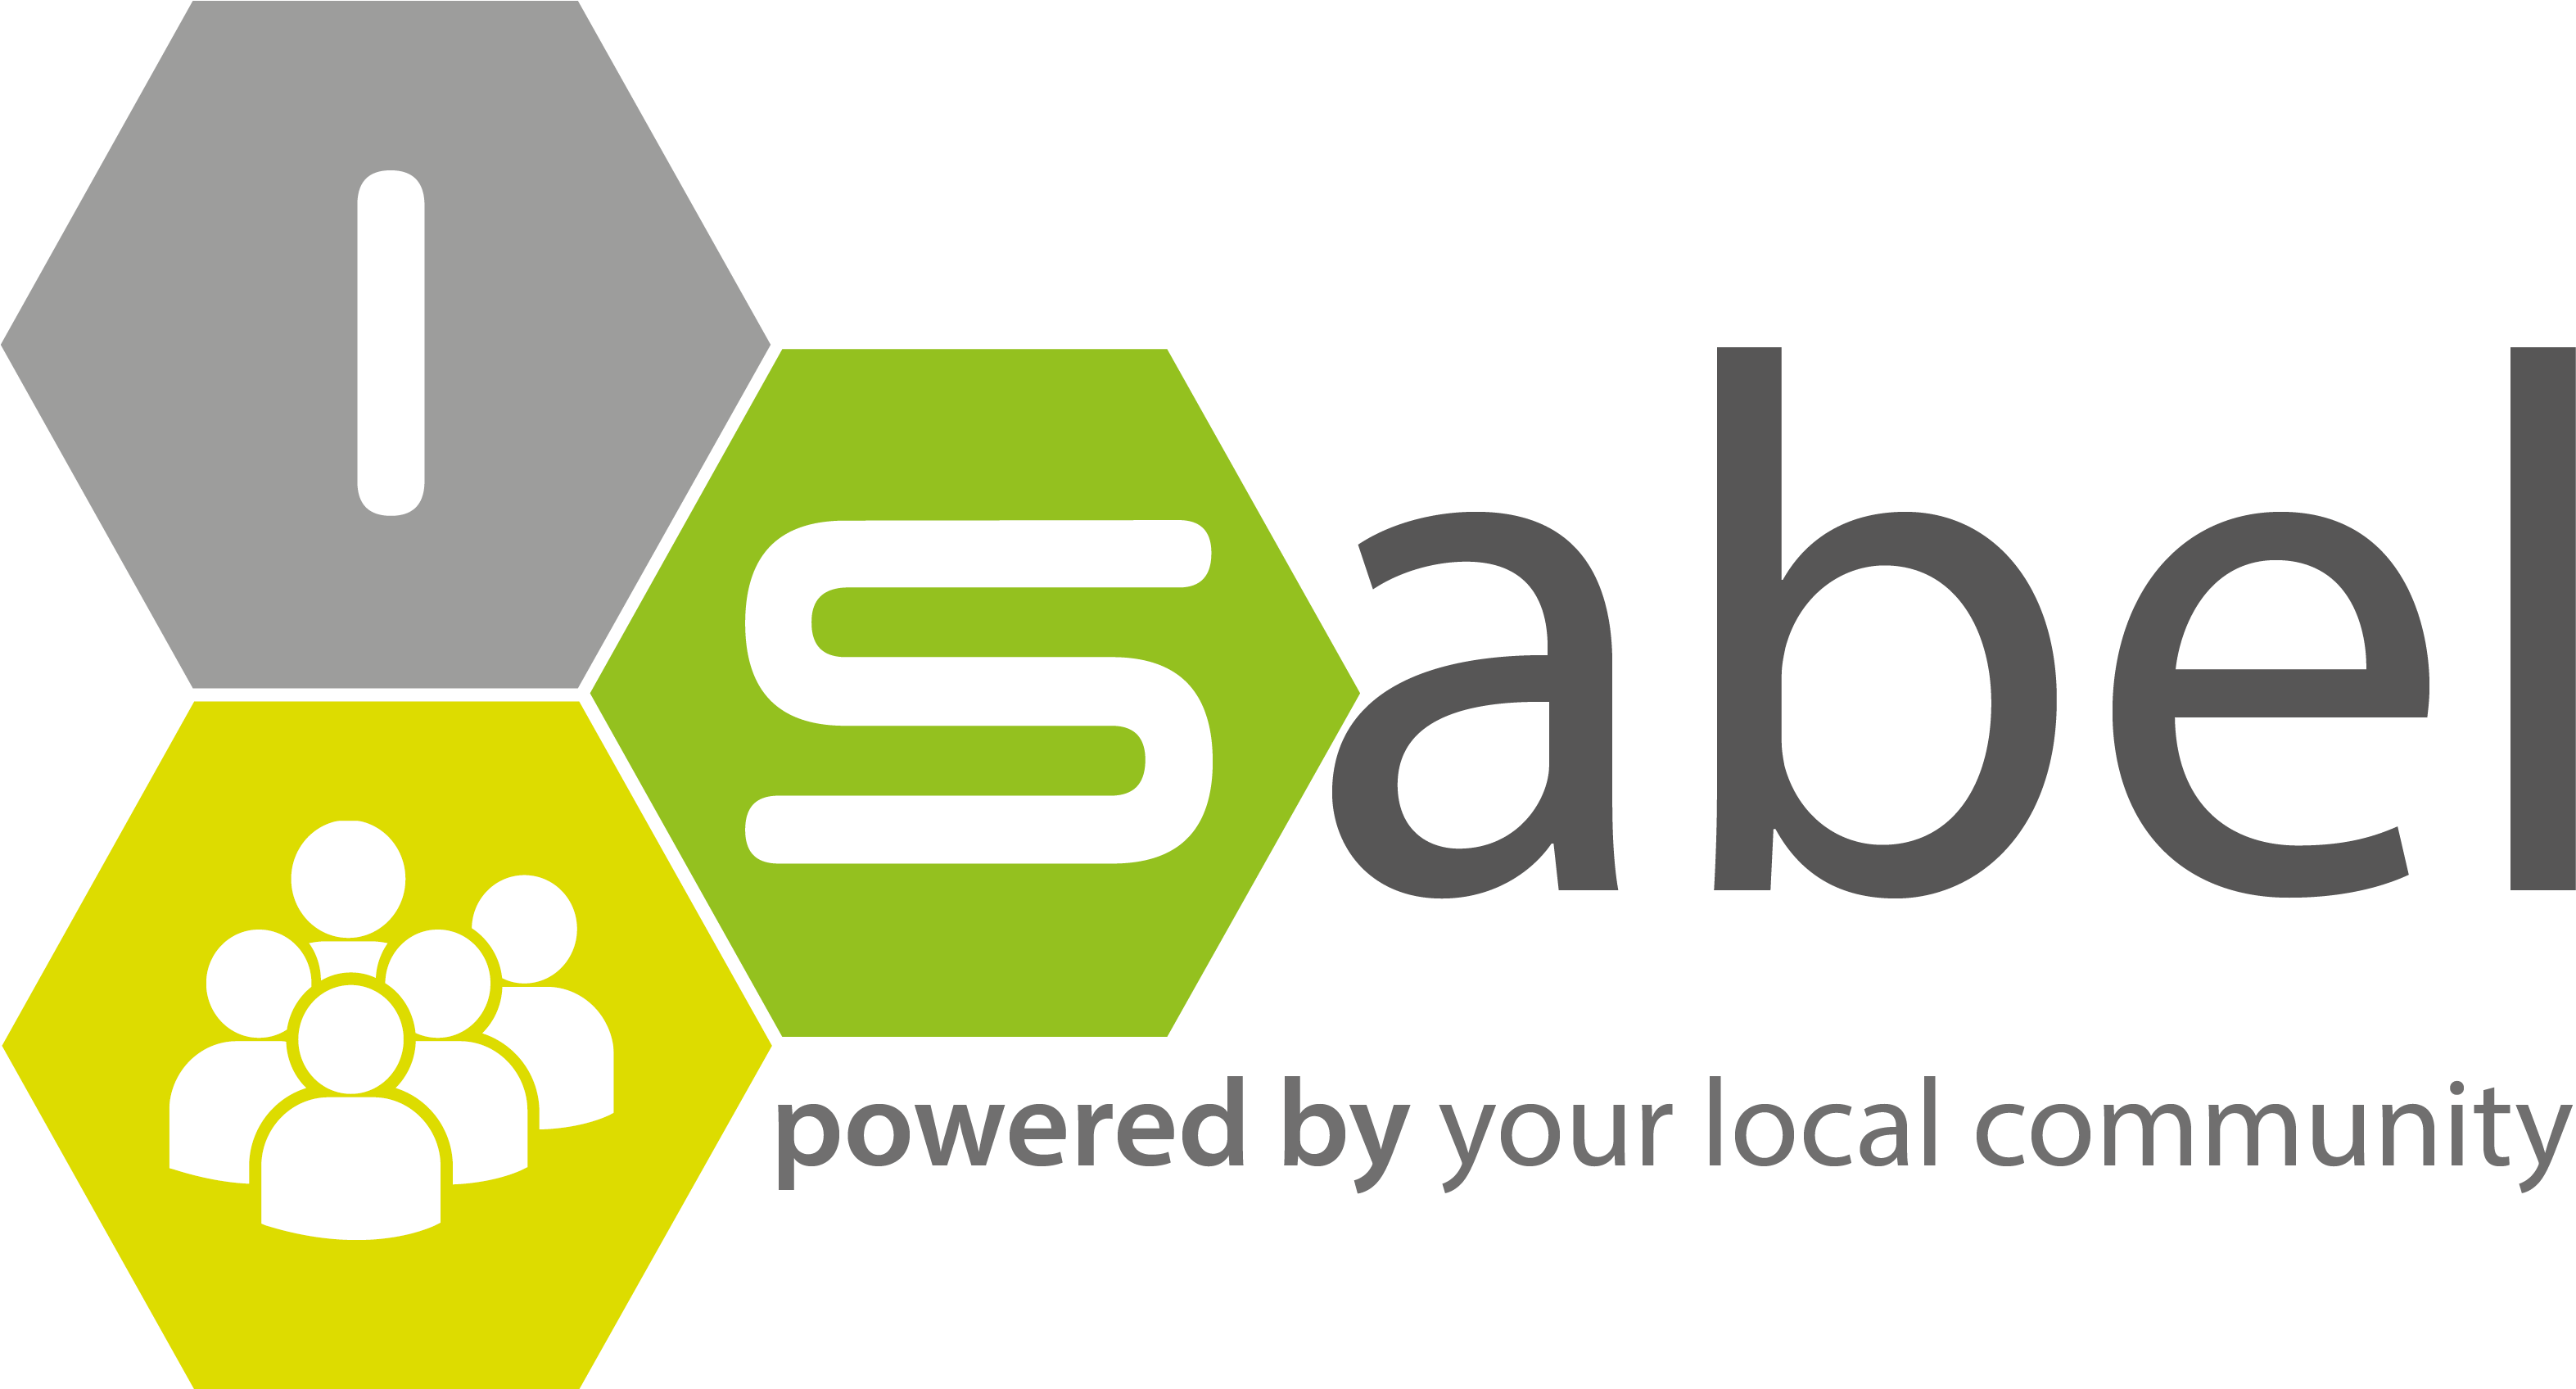 Isabel Logo W Slogan - Sa 8000 (3213x1695)